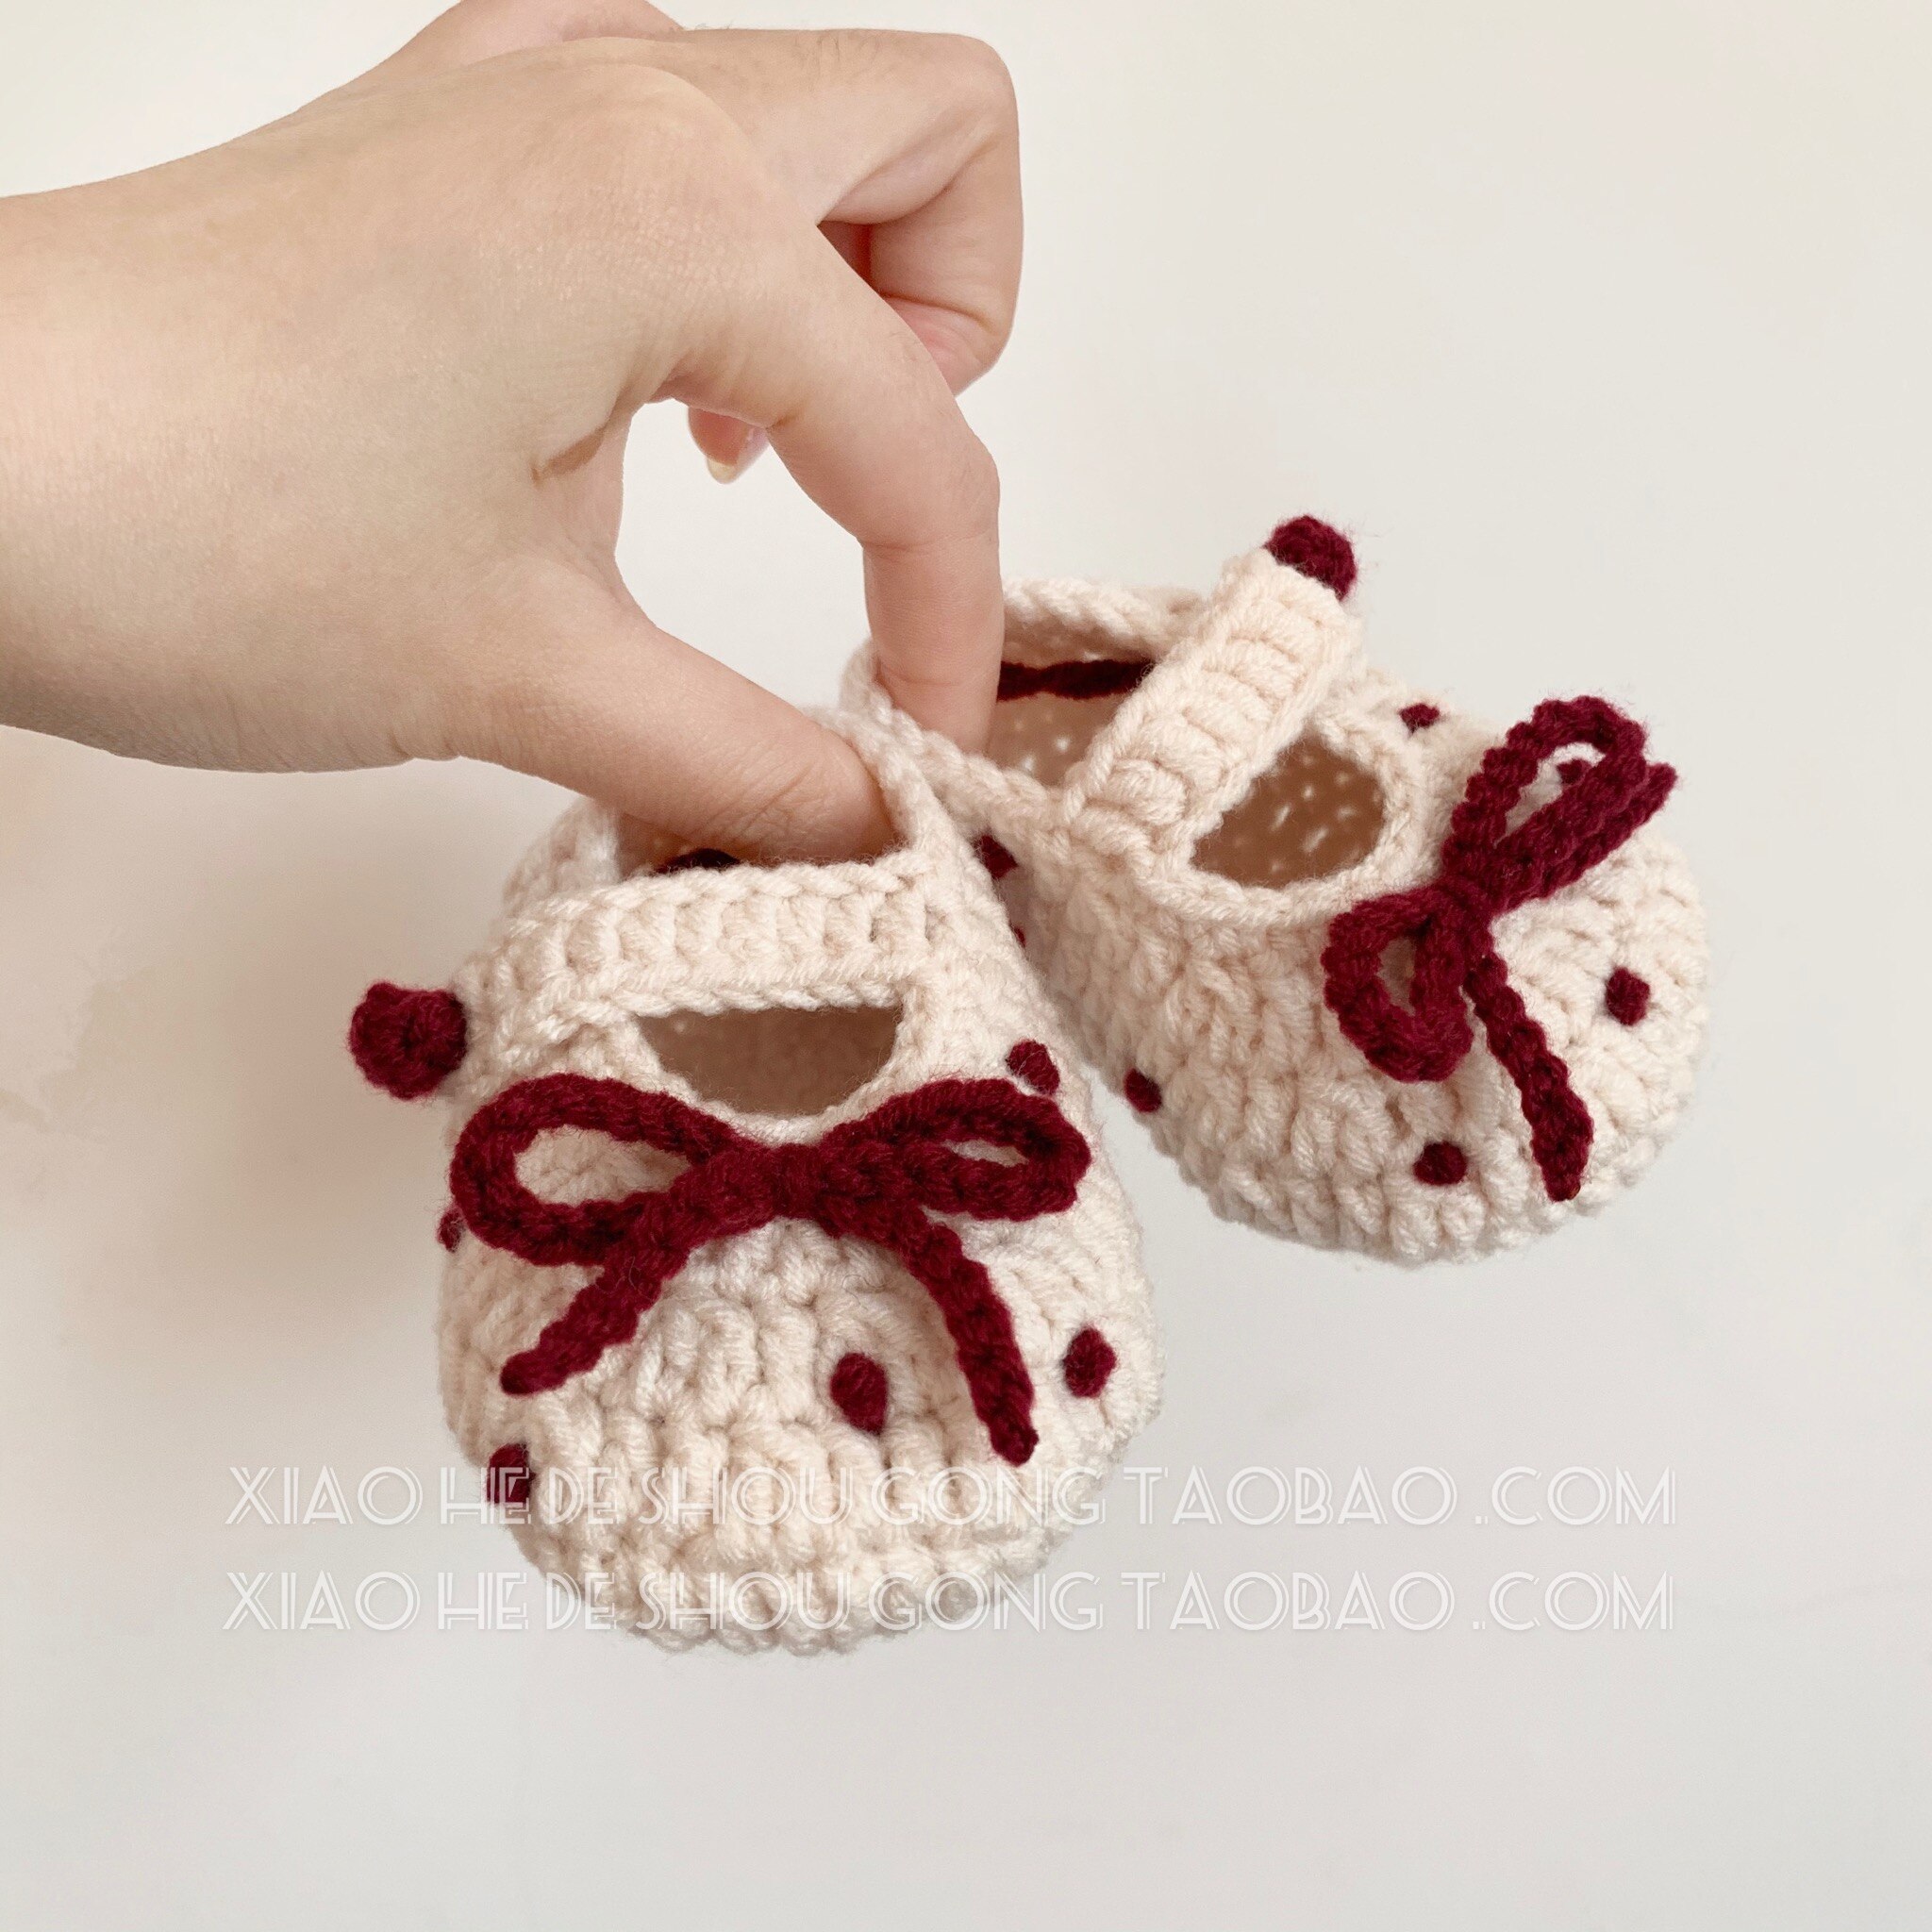 Originale håndvævede uld babysko søde polka dot bow baby småbarnssko 100- dages banket 0-6 måneder